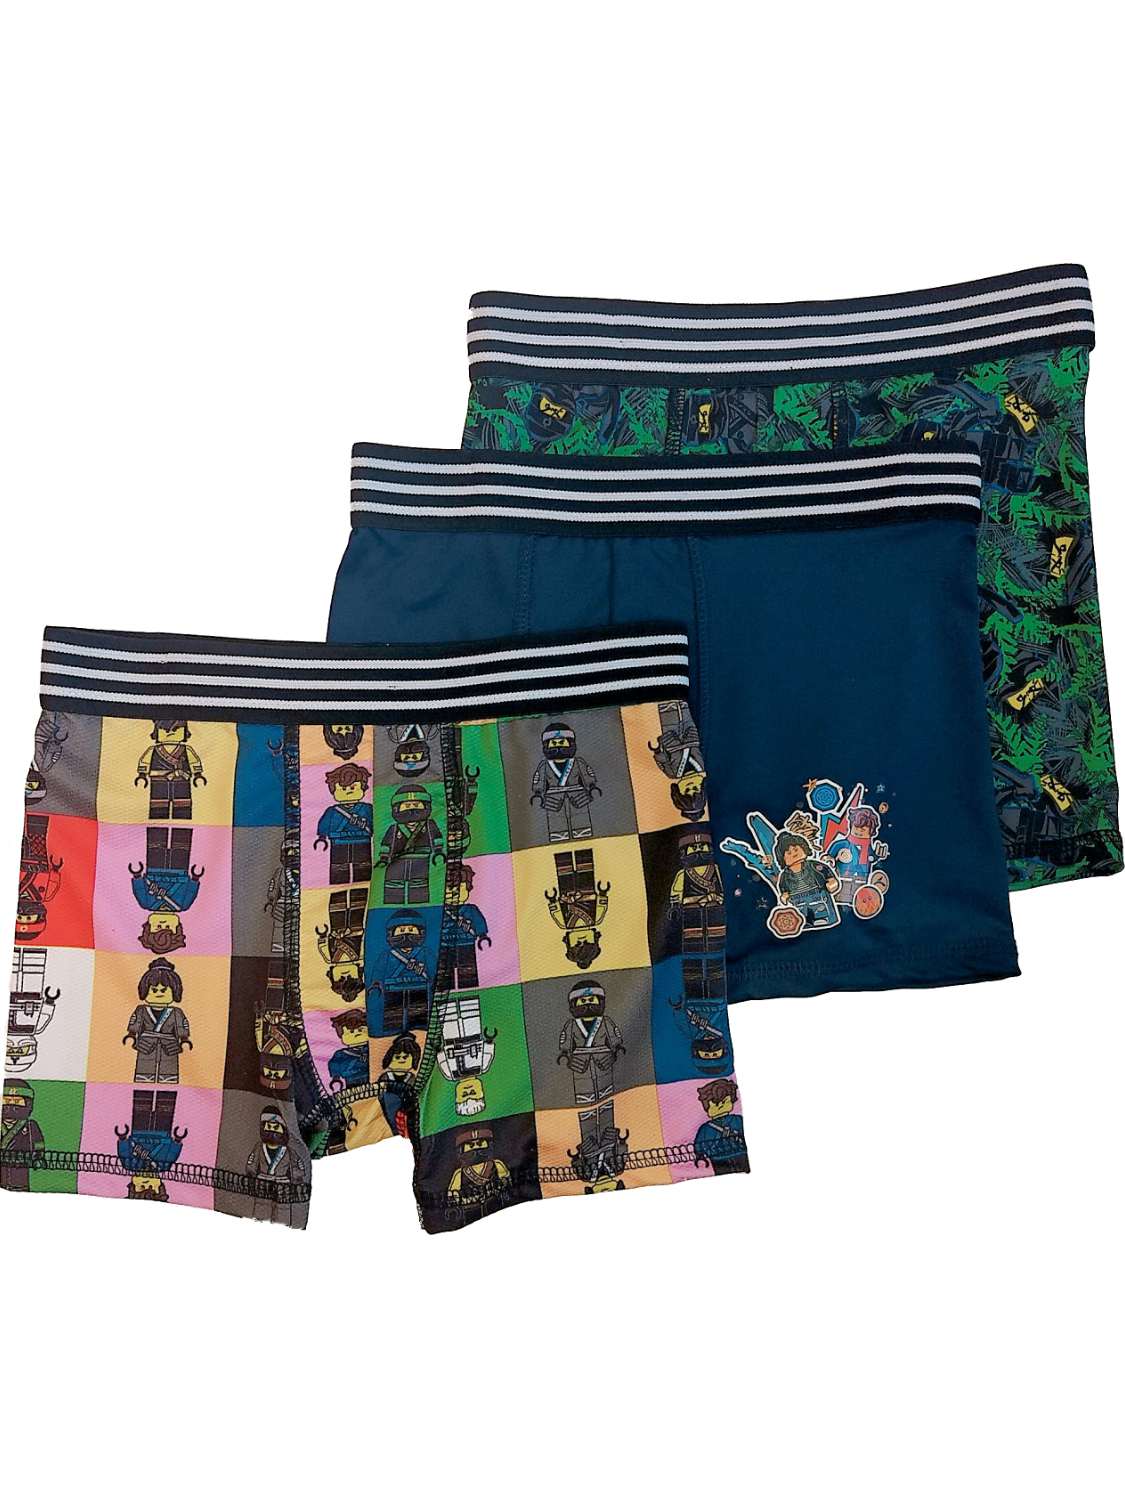 Bioworld DC Comics Boys 3pc Batman Boxer Briefs Boxer Shorts Set Underwear 6